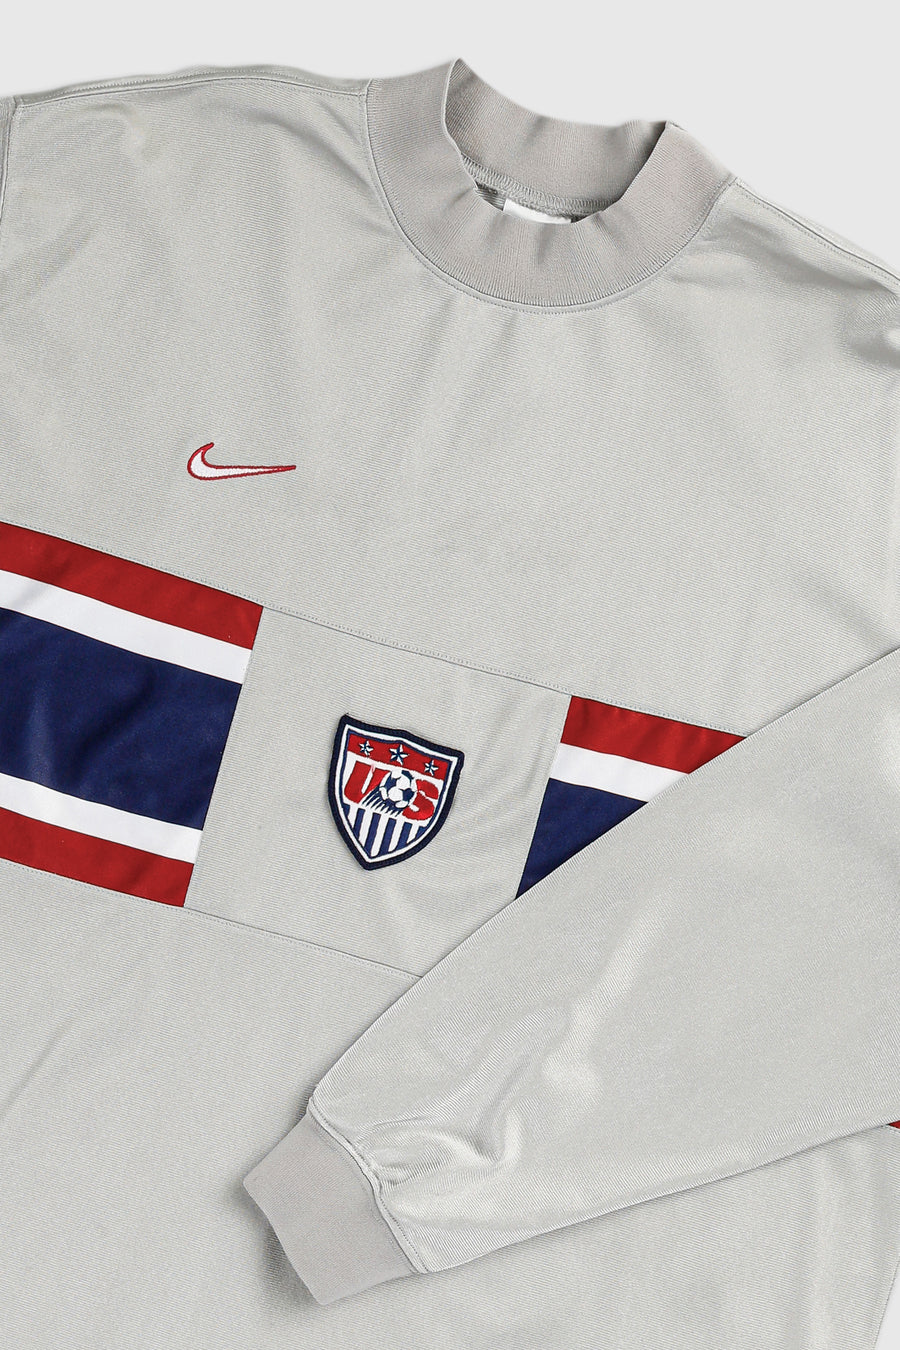 Vintage USA Longsleeve Soccer Jersey - L